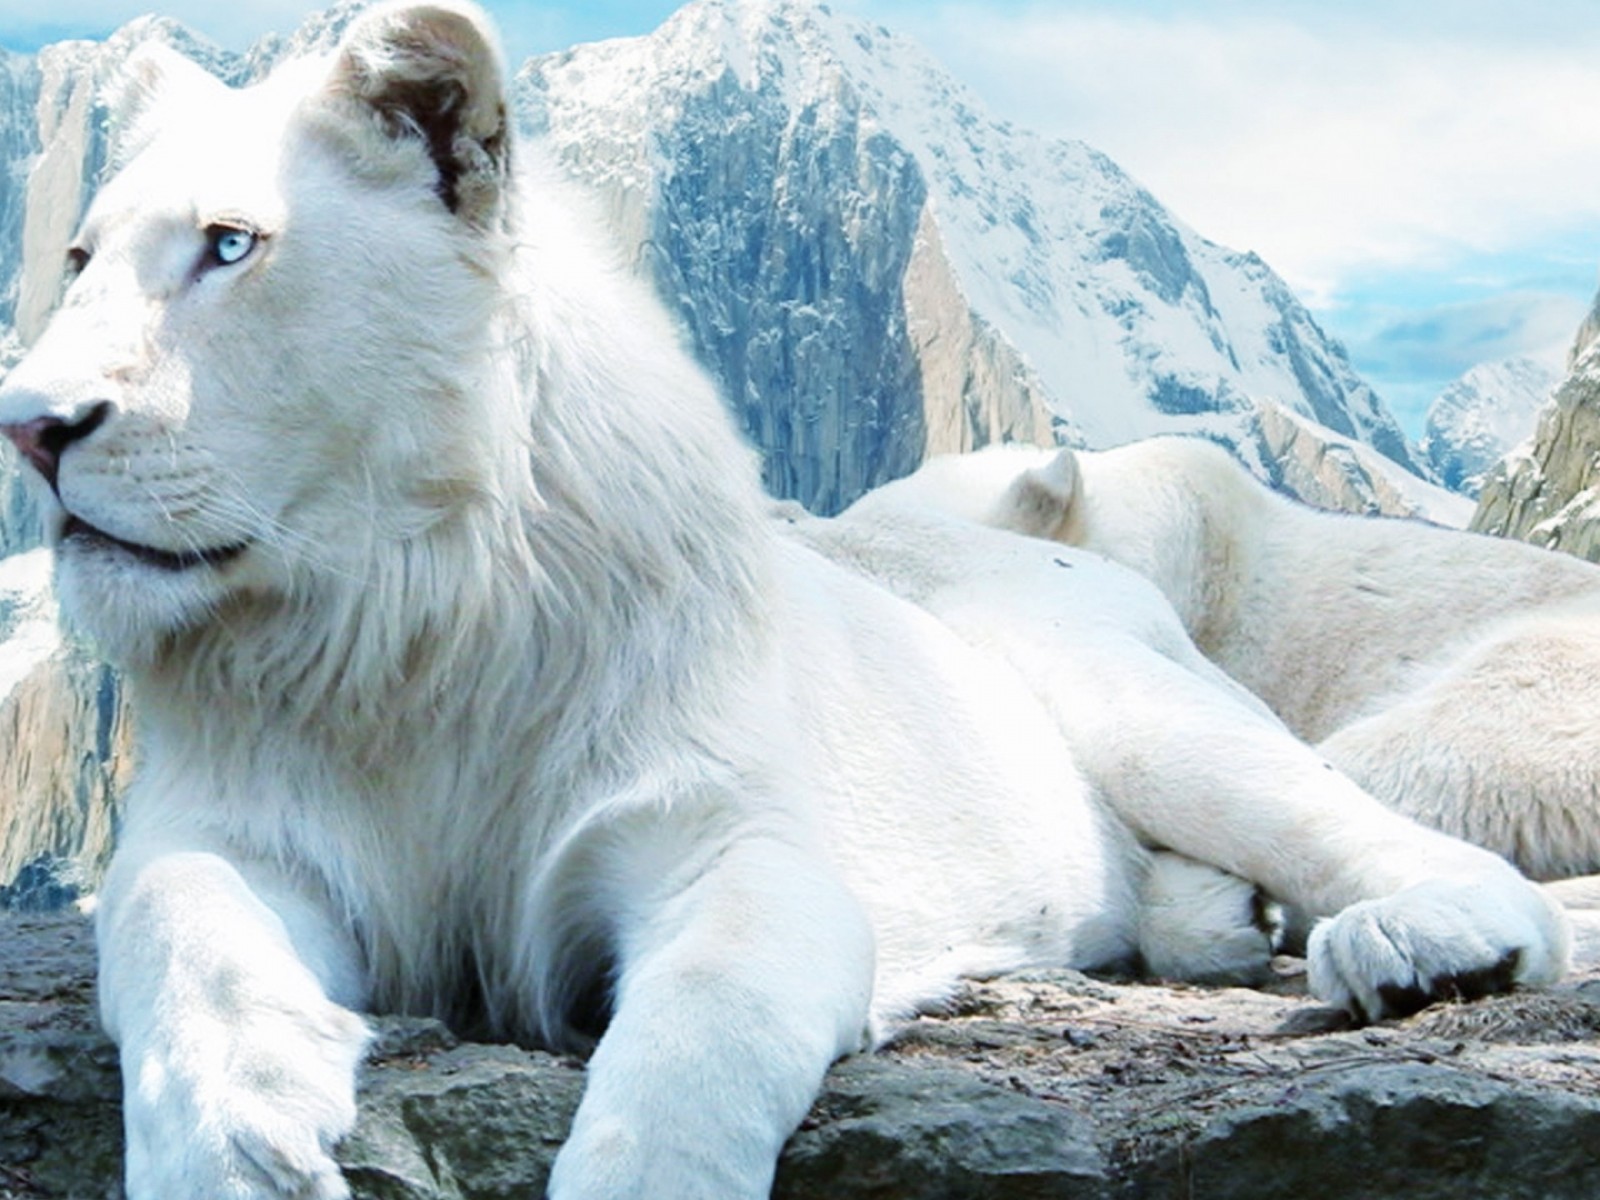 White Lion #4